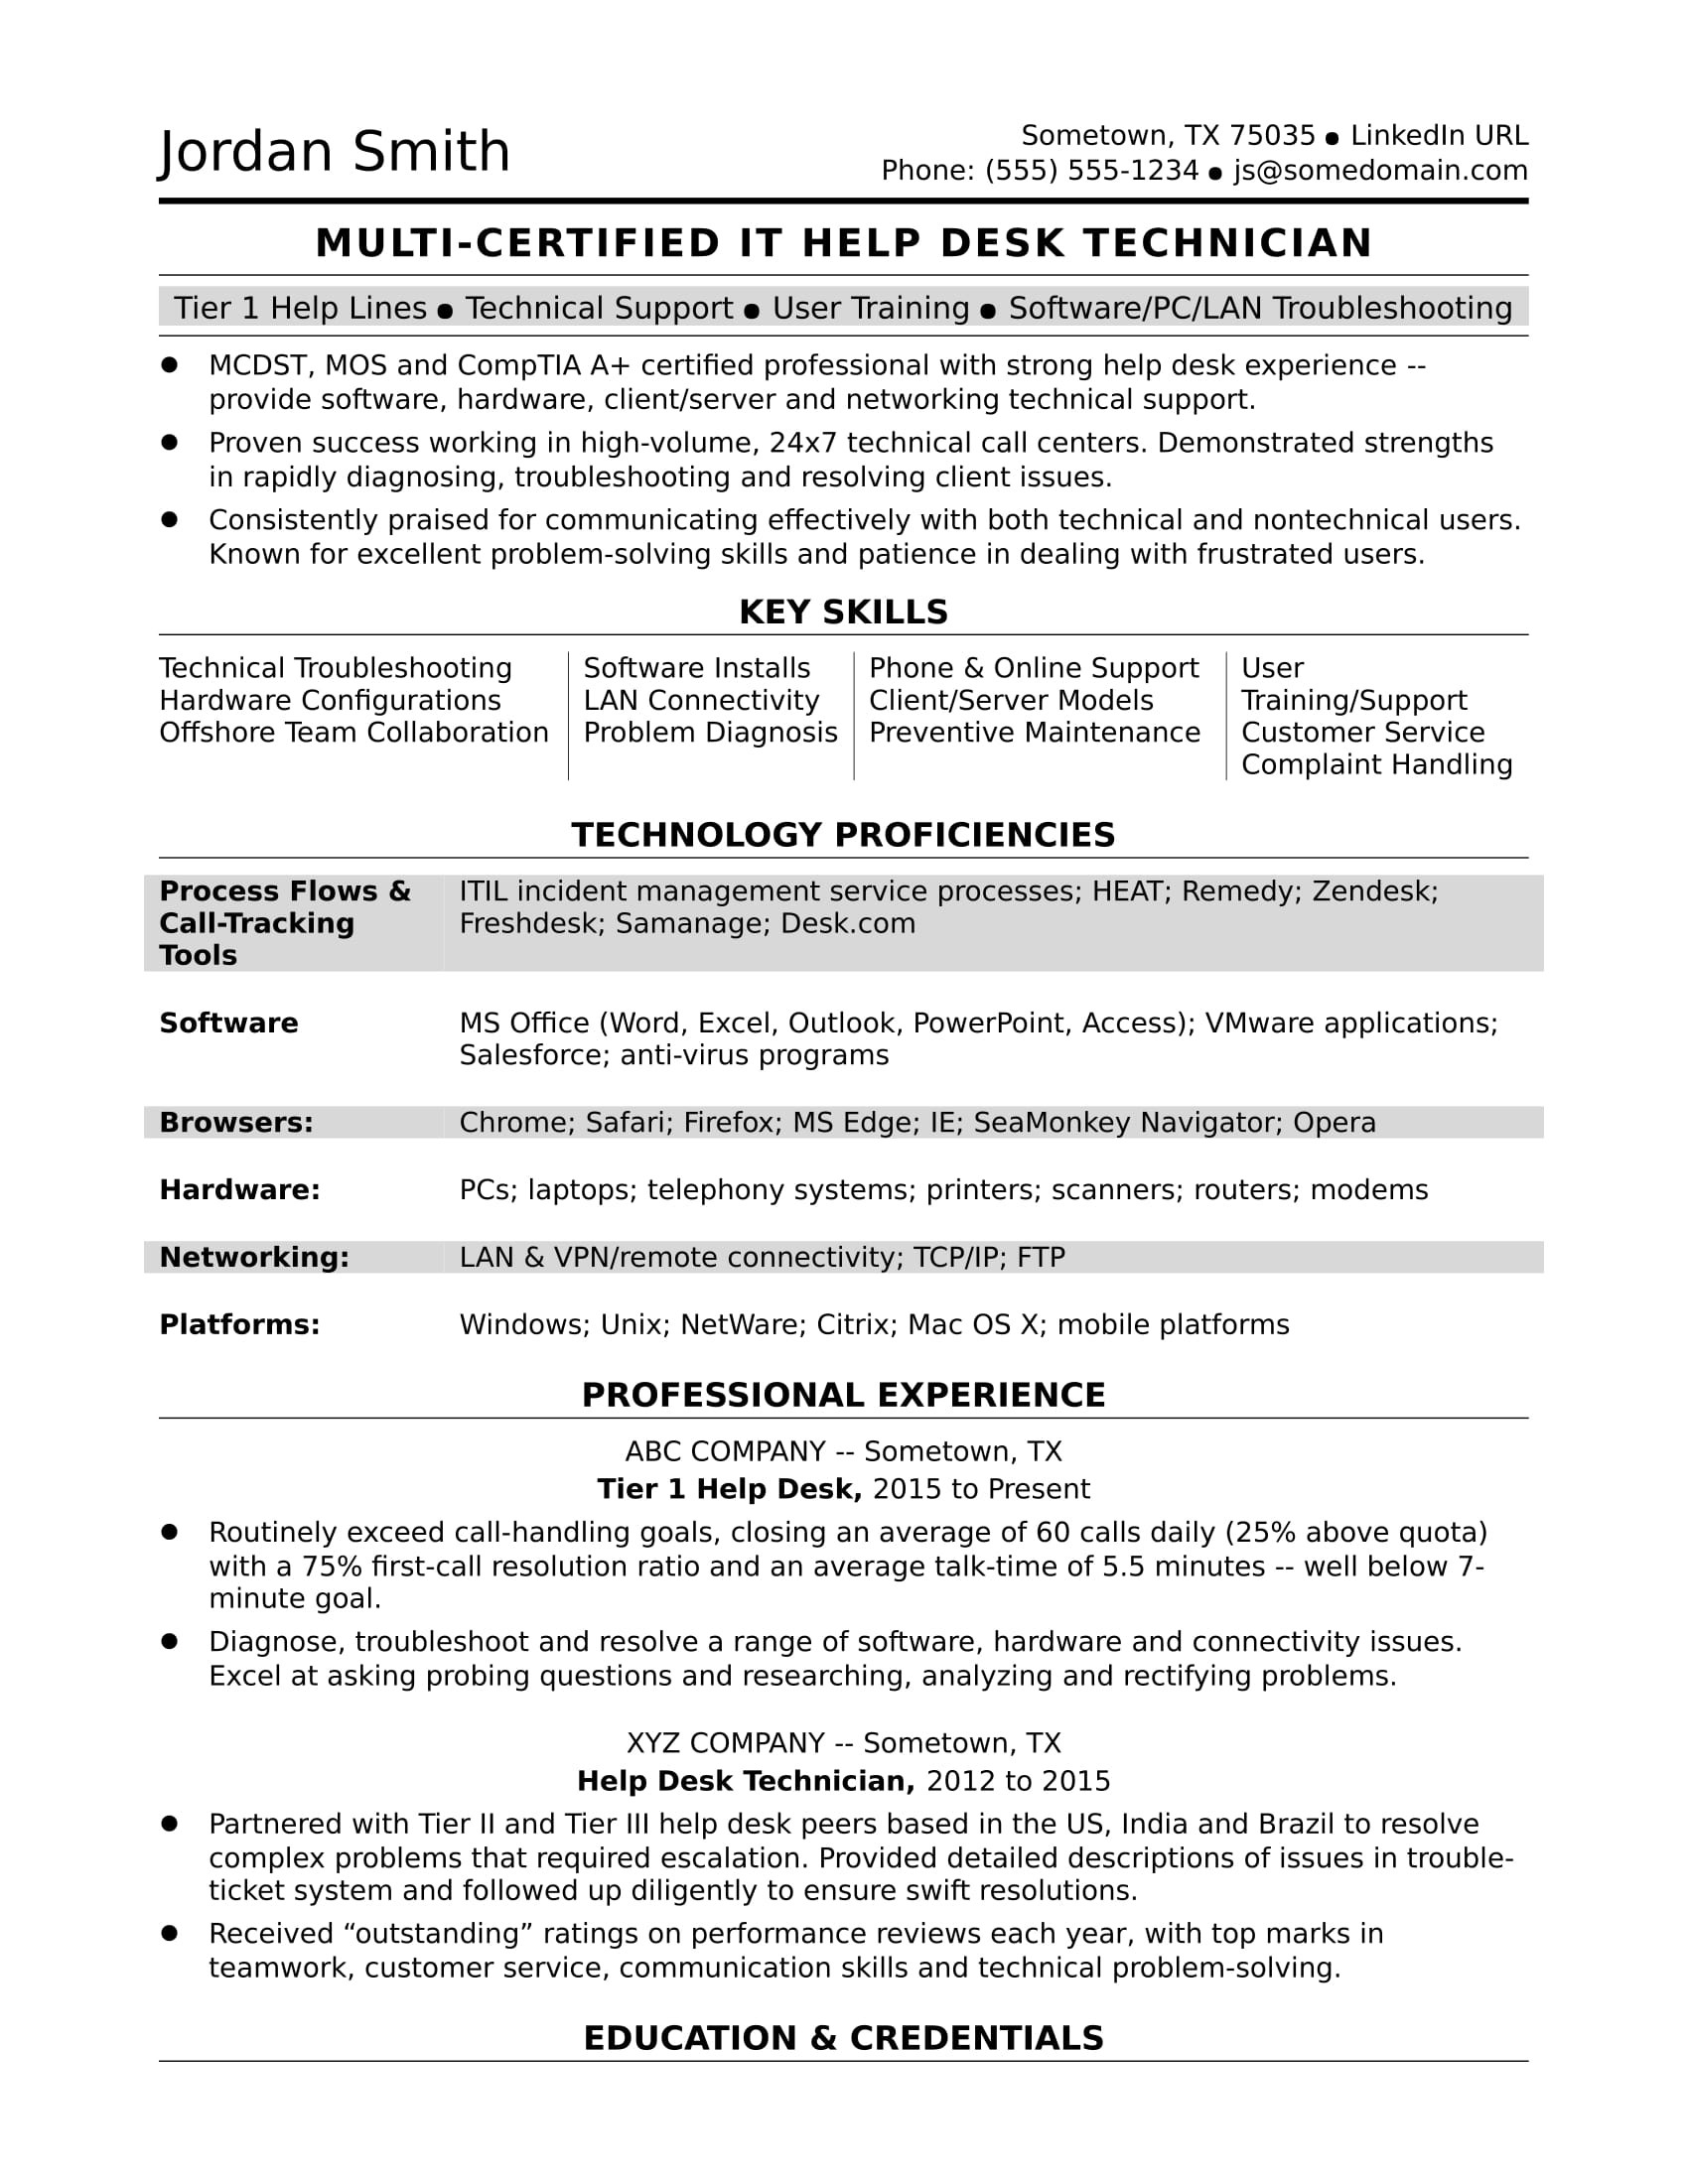 Sample Resume for Server Support Engineer Sample Resume for A Midlevel It Help Desk Professional Monster.com